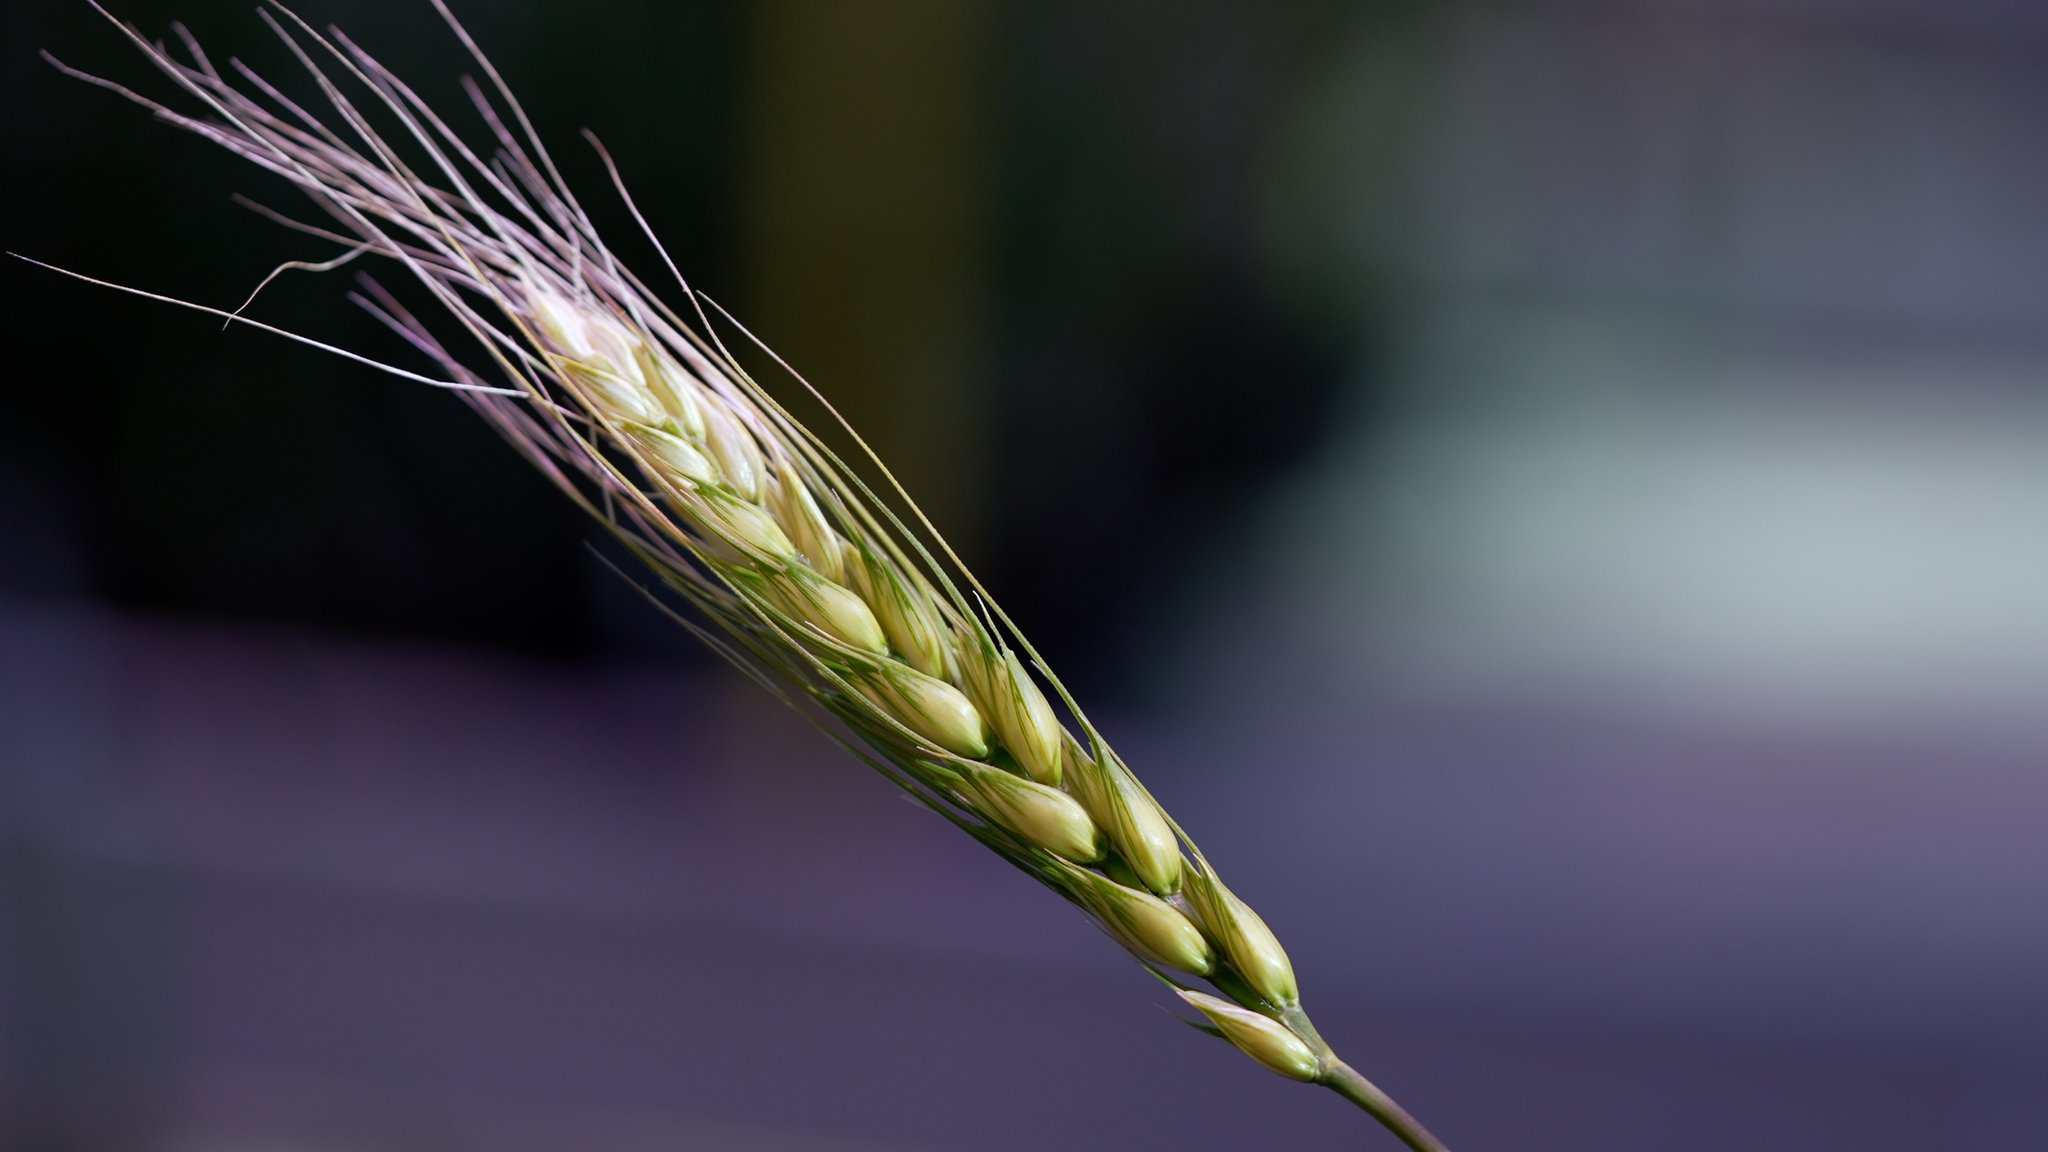 氣候變遷與病蟲害威脅農作物生存，數百年前的小麥樣本能解決世界糧食供應問題嗎？